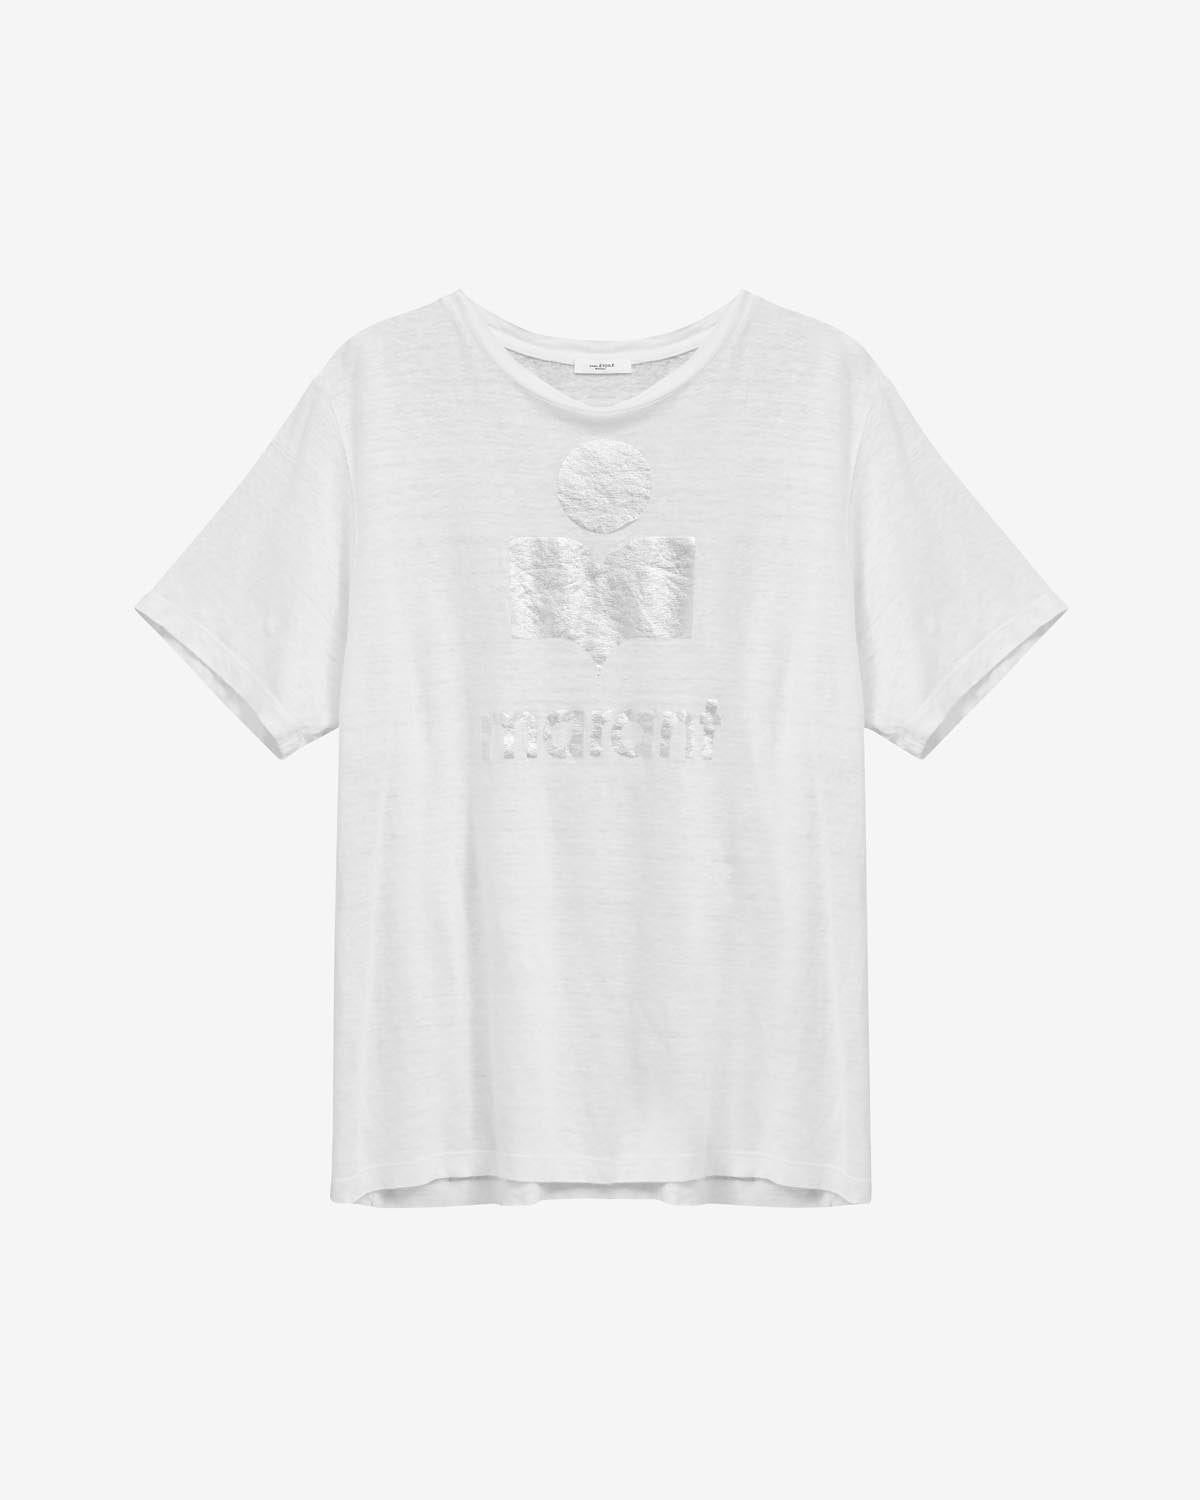 Zewel t-shirt Woman Bianco 1